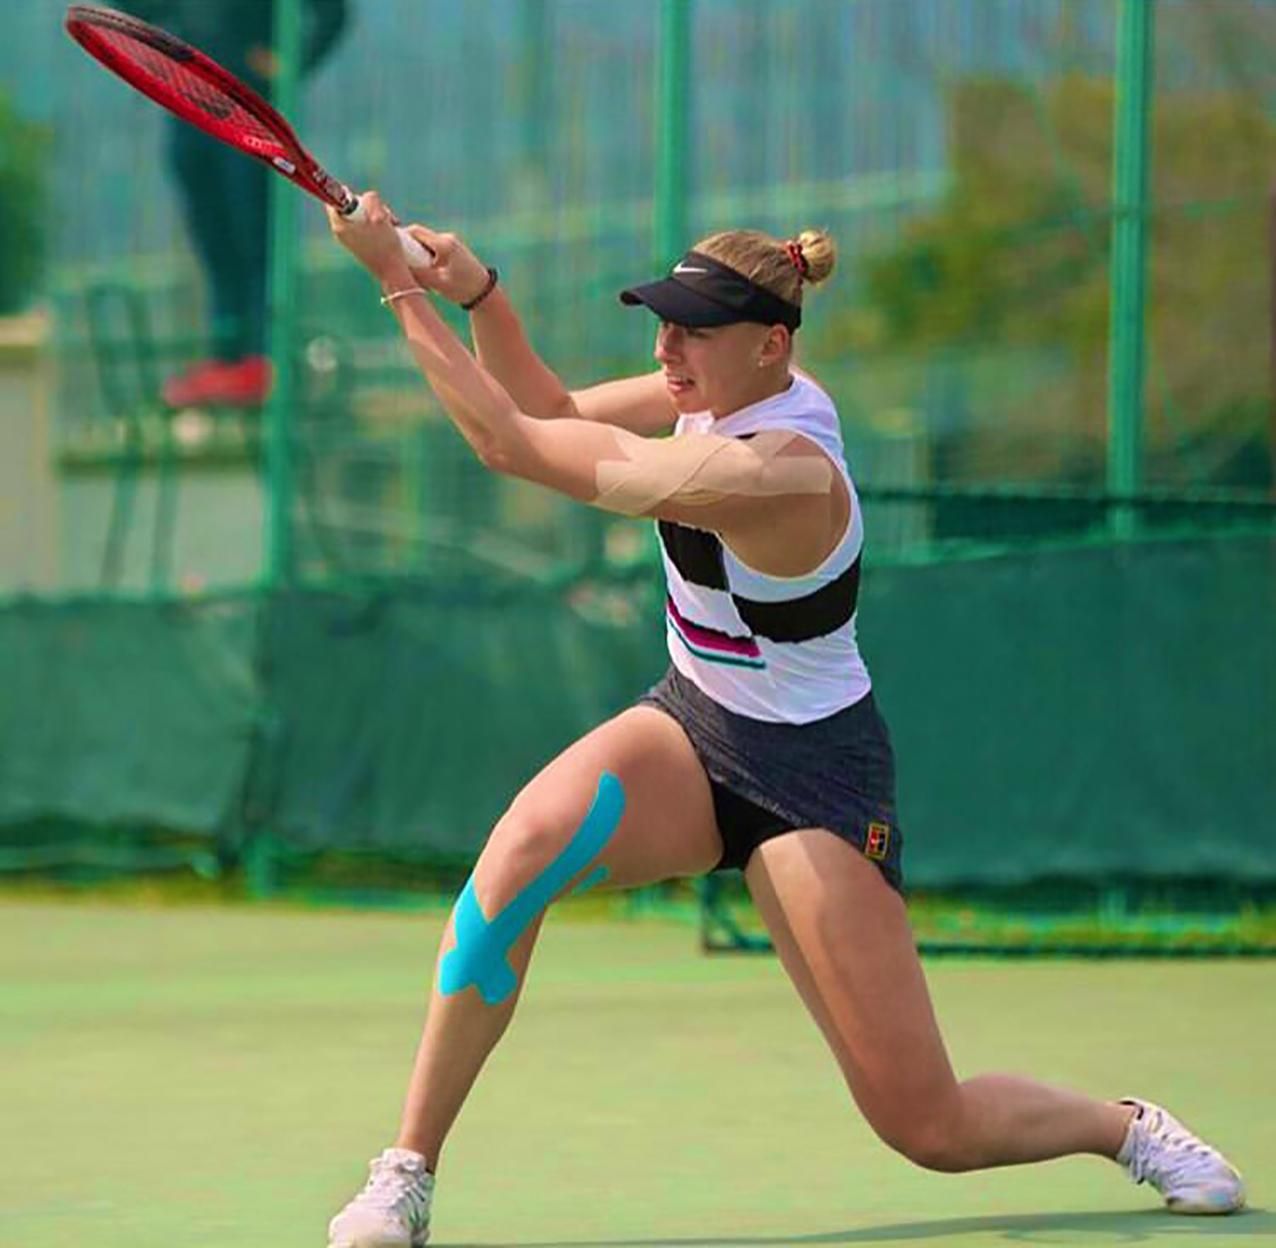 15-летняя украинка Лопатецкая одержала драматическую победу в турнире по теннису в Японии